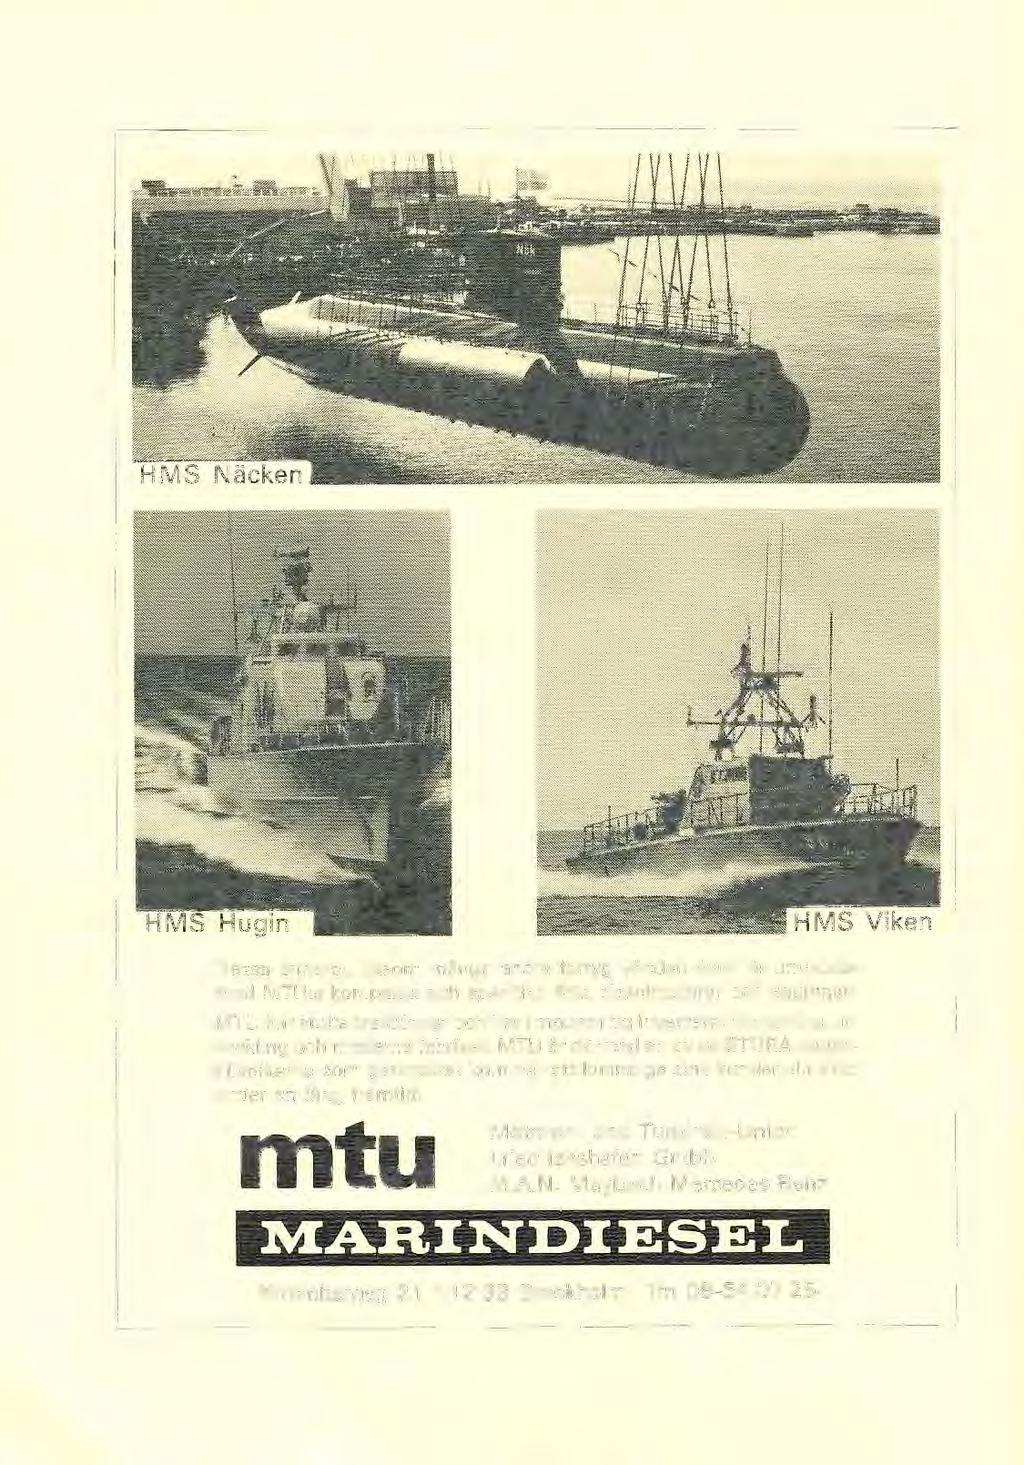 Dessa enheter, iksm många andra fartyg värden över, är utrustade med MTU:s